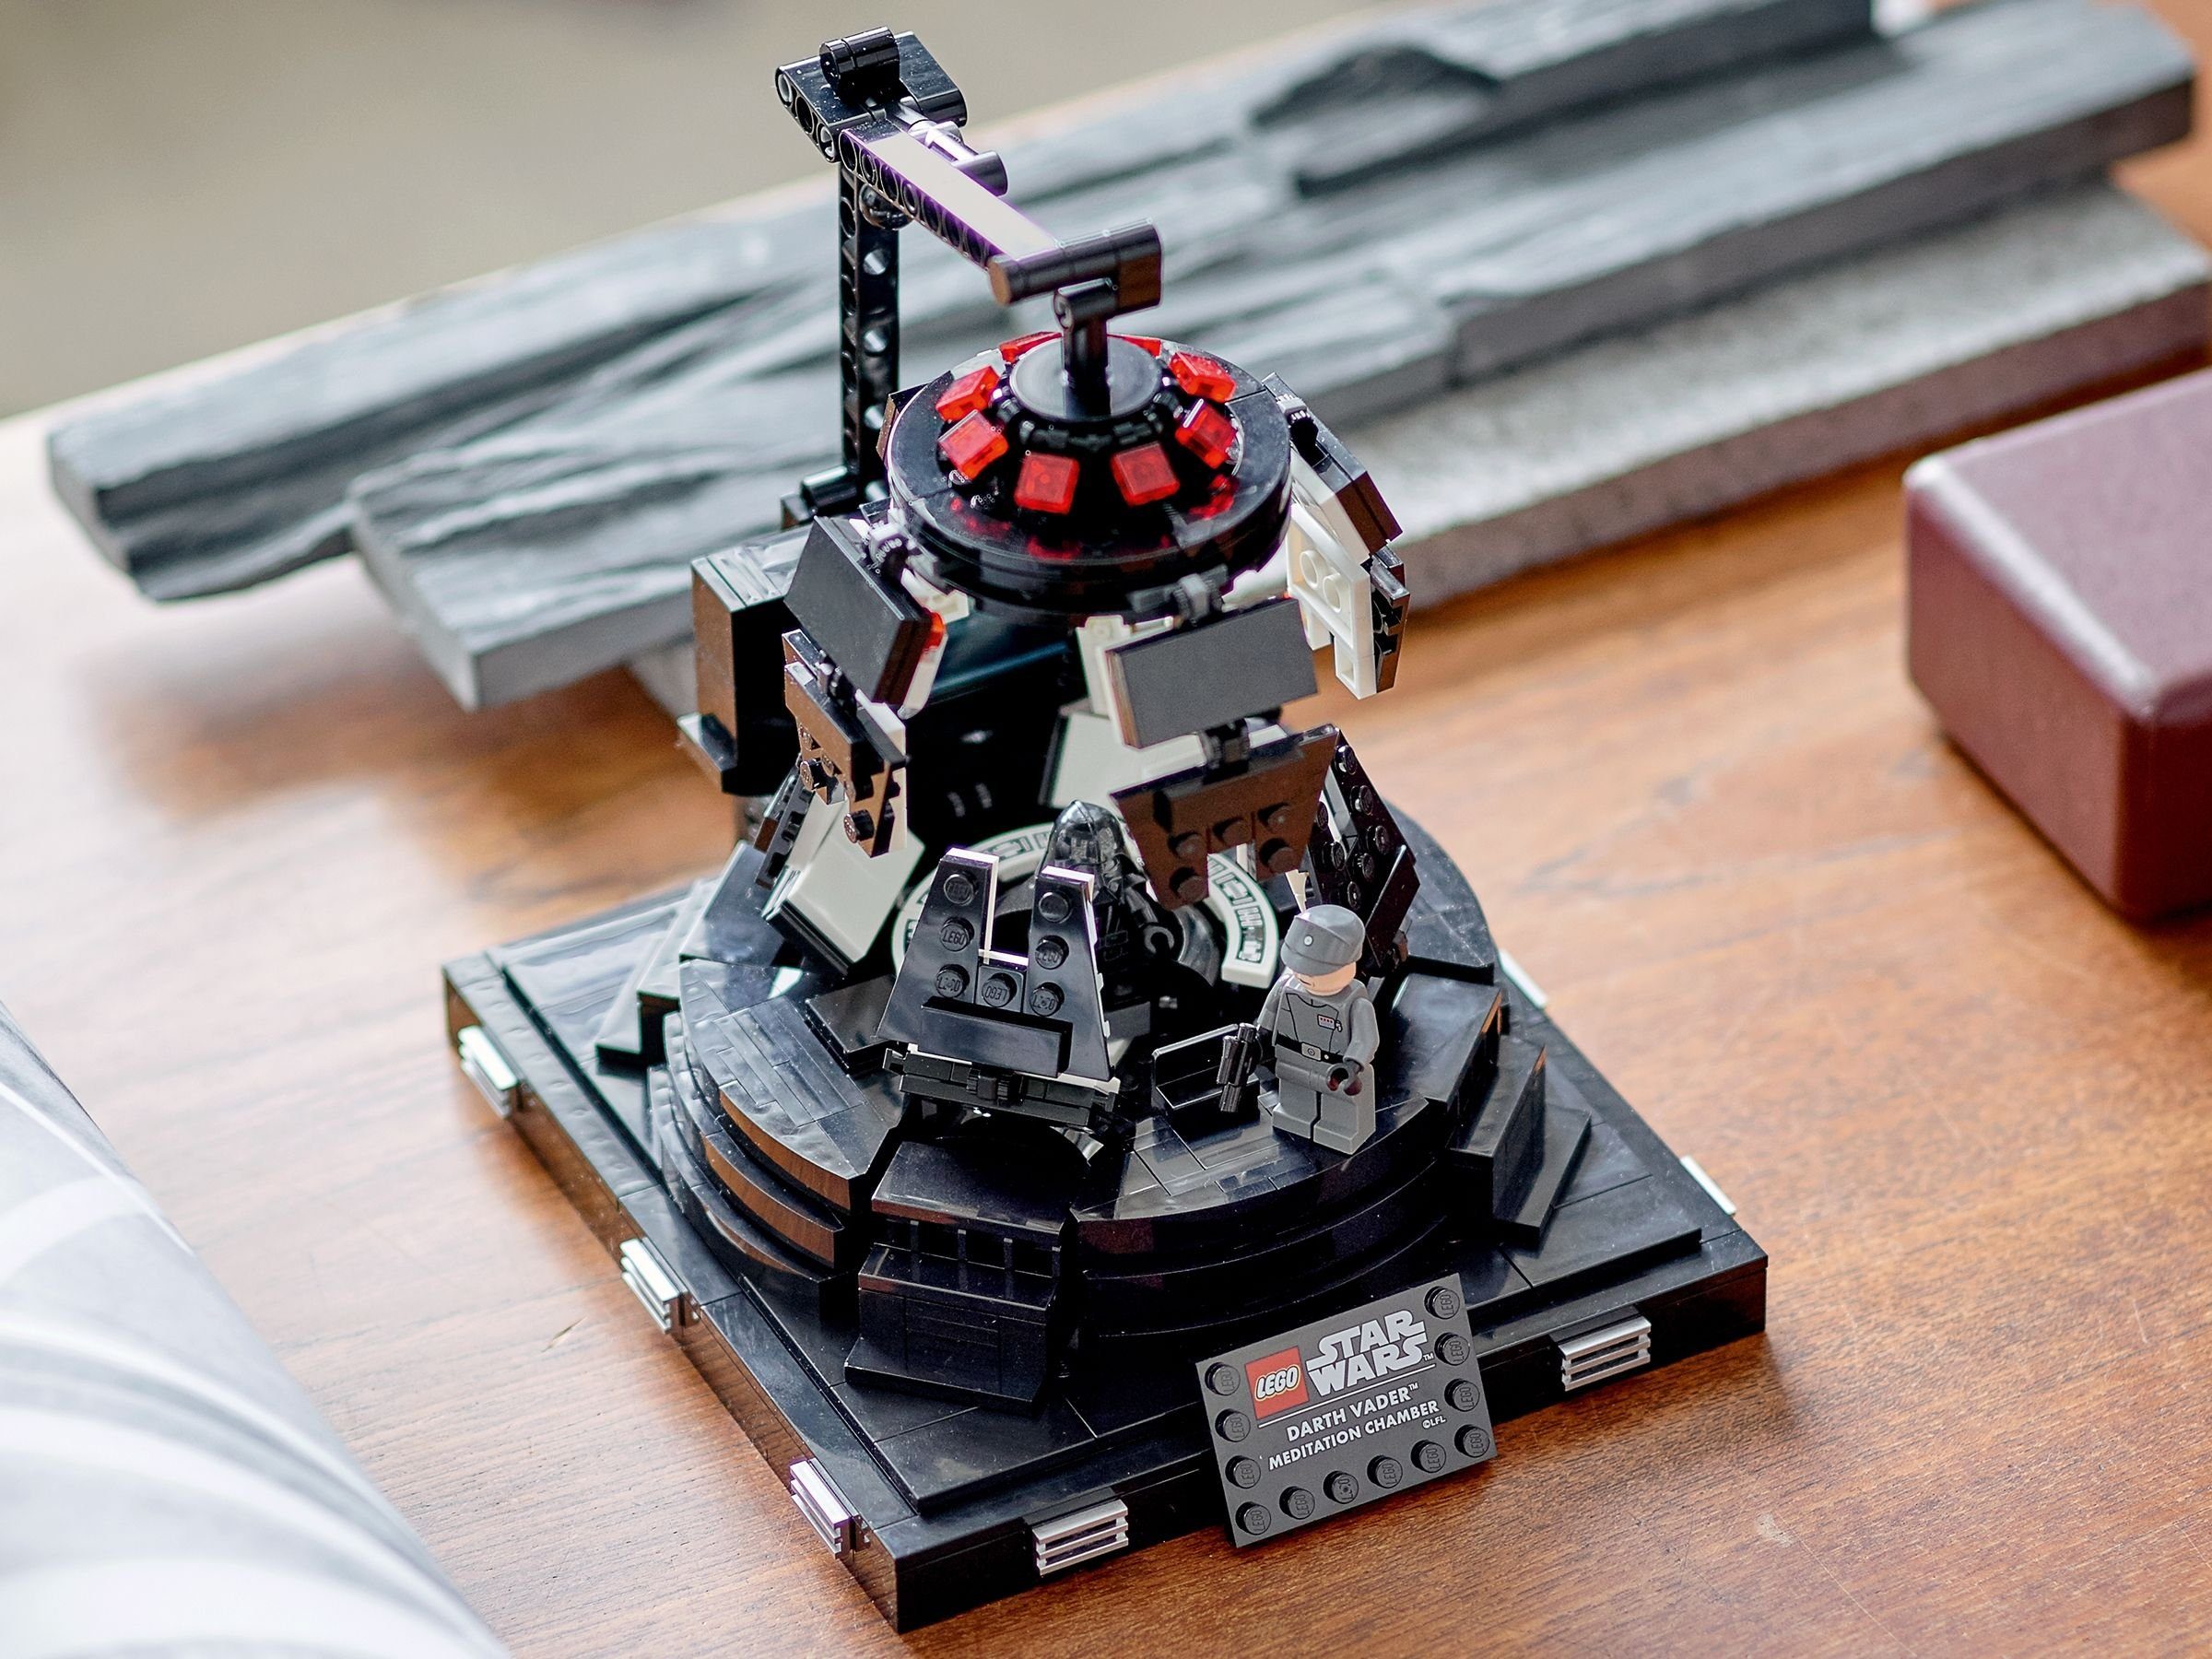 LEGO Spielwaren 663 Darth Vader™ Star GmbH Meditationskammer, Konstruktionsspielsteine - Wars™ LEGO® LEGO® (Set, St)